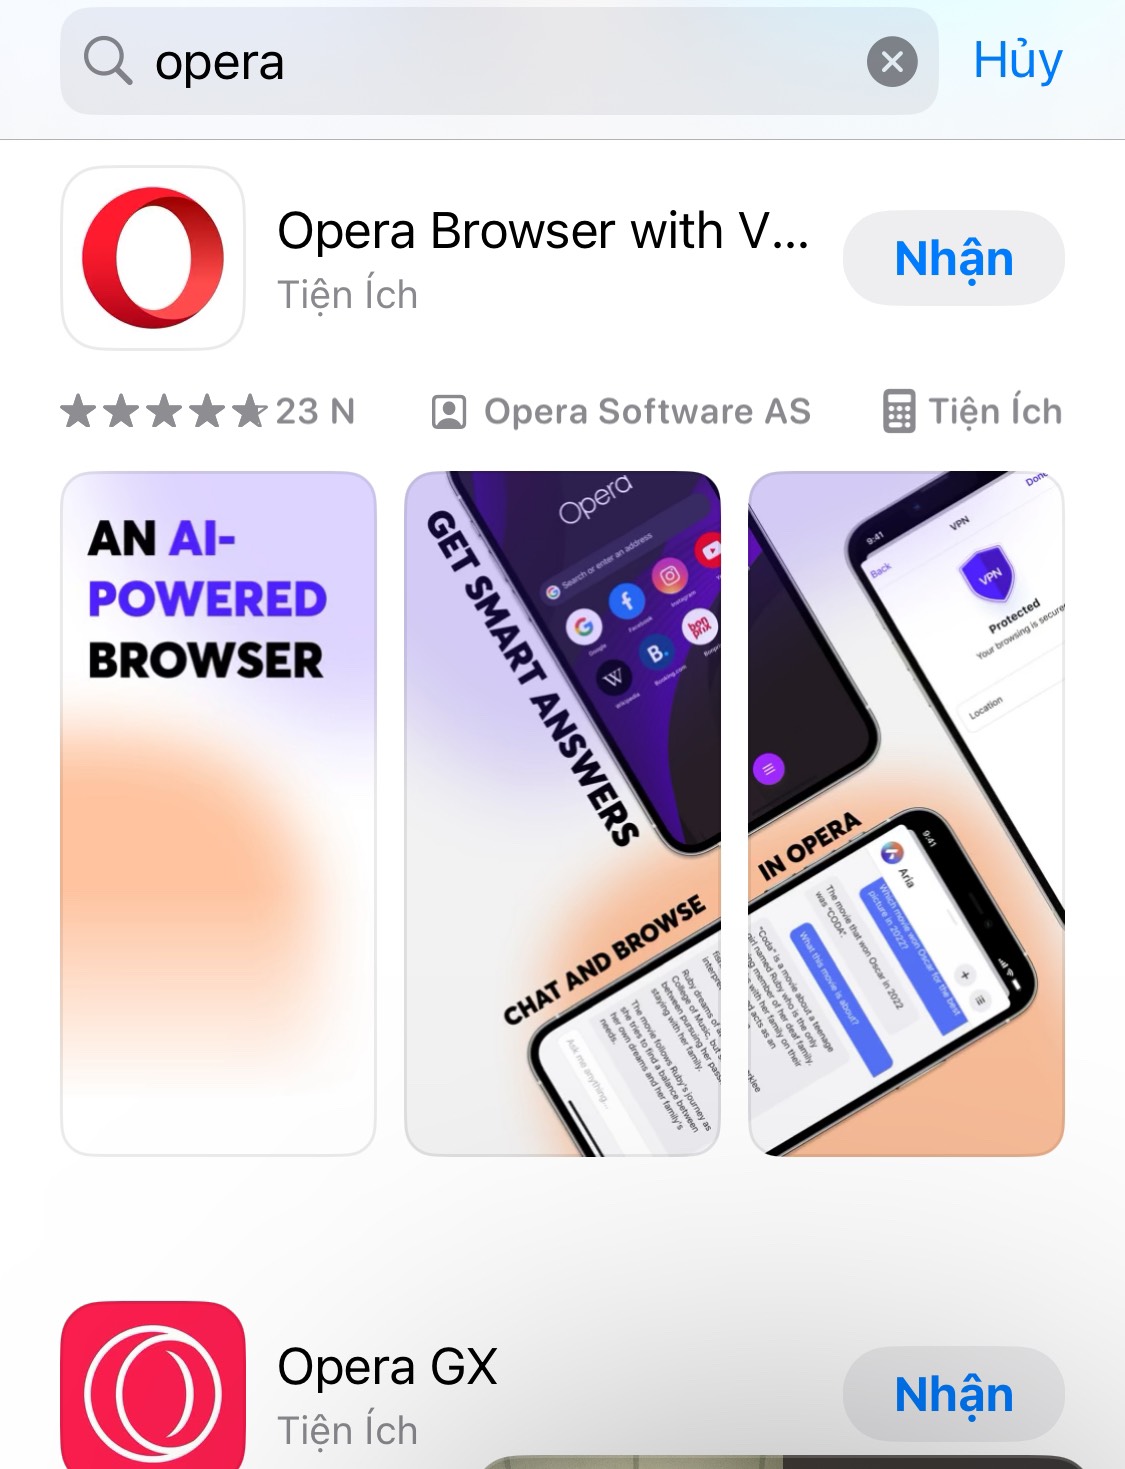 Opera - App nghe nhạc Youtube khi tắt màn hình iOS cung cấp tính năng chặn quảng cáo